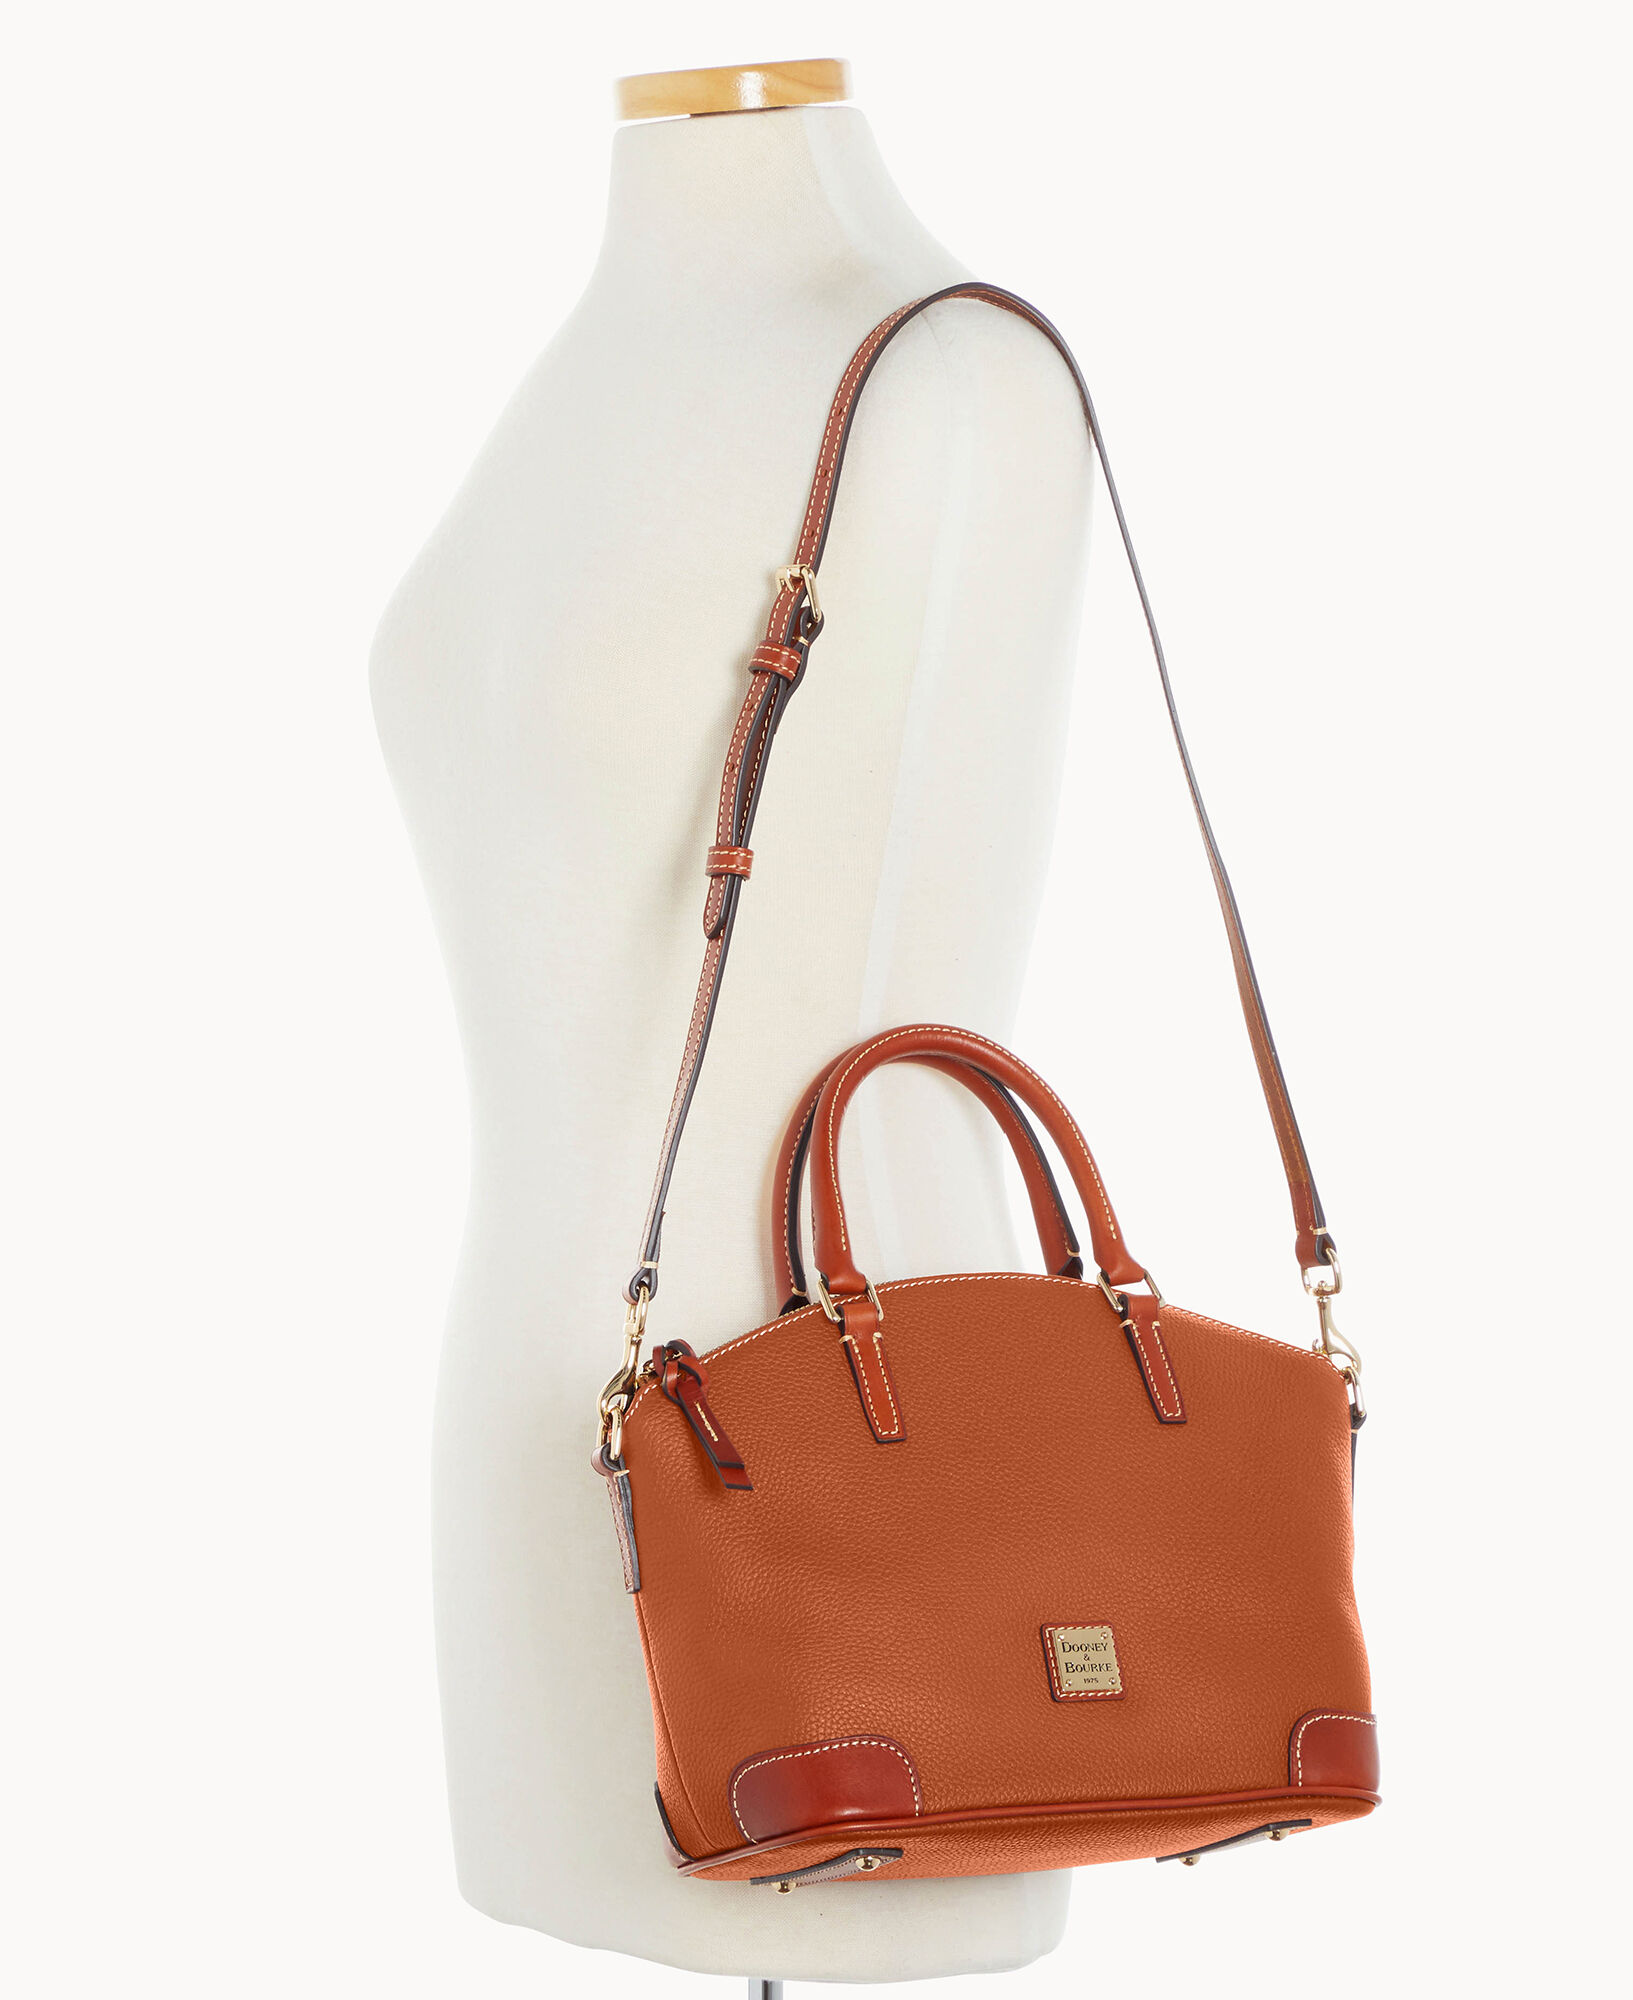 Dooney & Bourke, Bags, Brown Leather Dooney Bourke Handbag